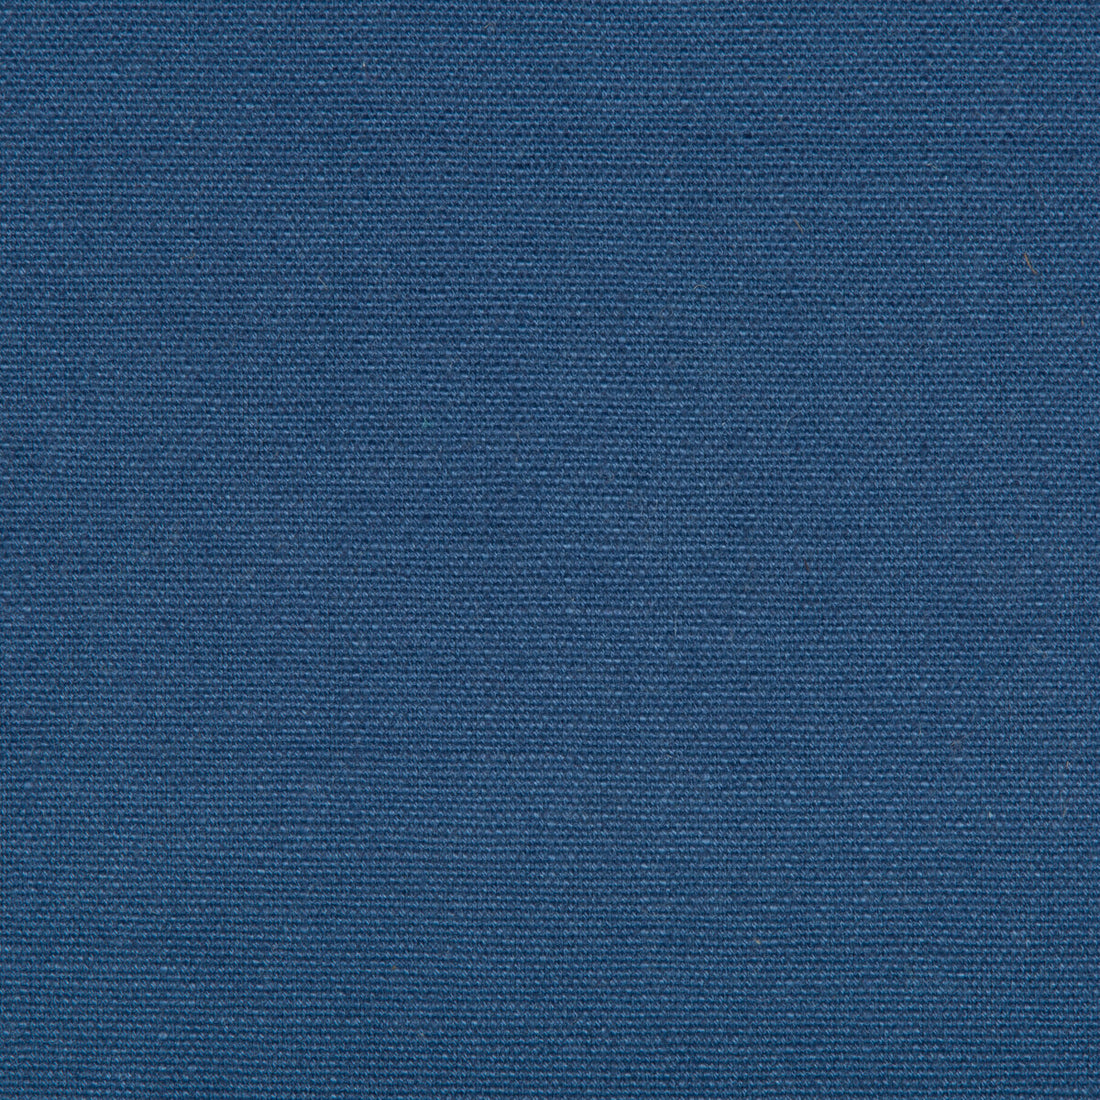 Kravet Basics fabric in 33771-5 color - pattern 33771.5.0 - by Kravet Basics